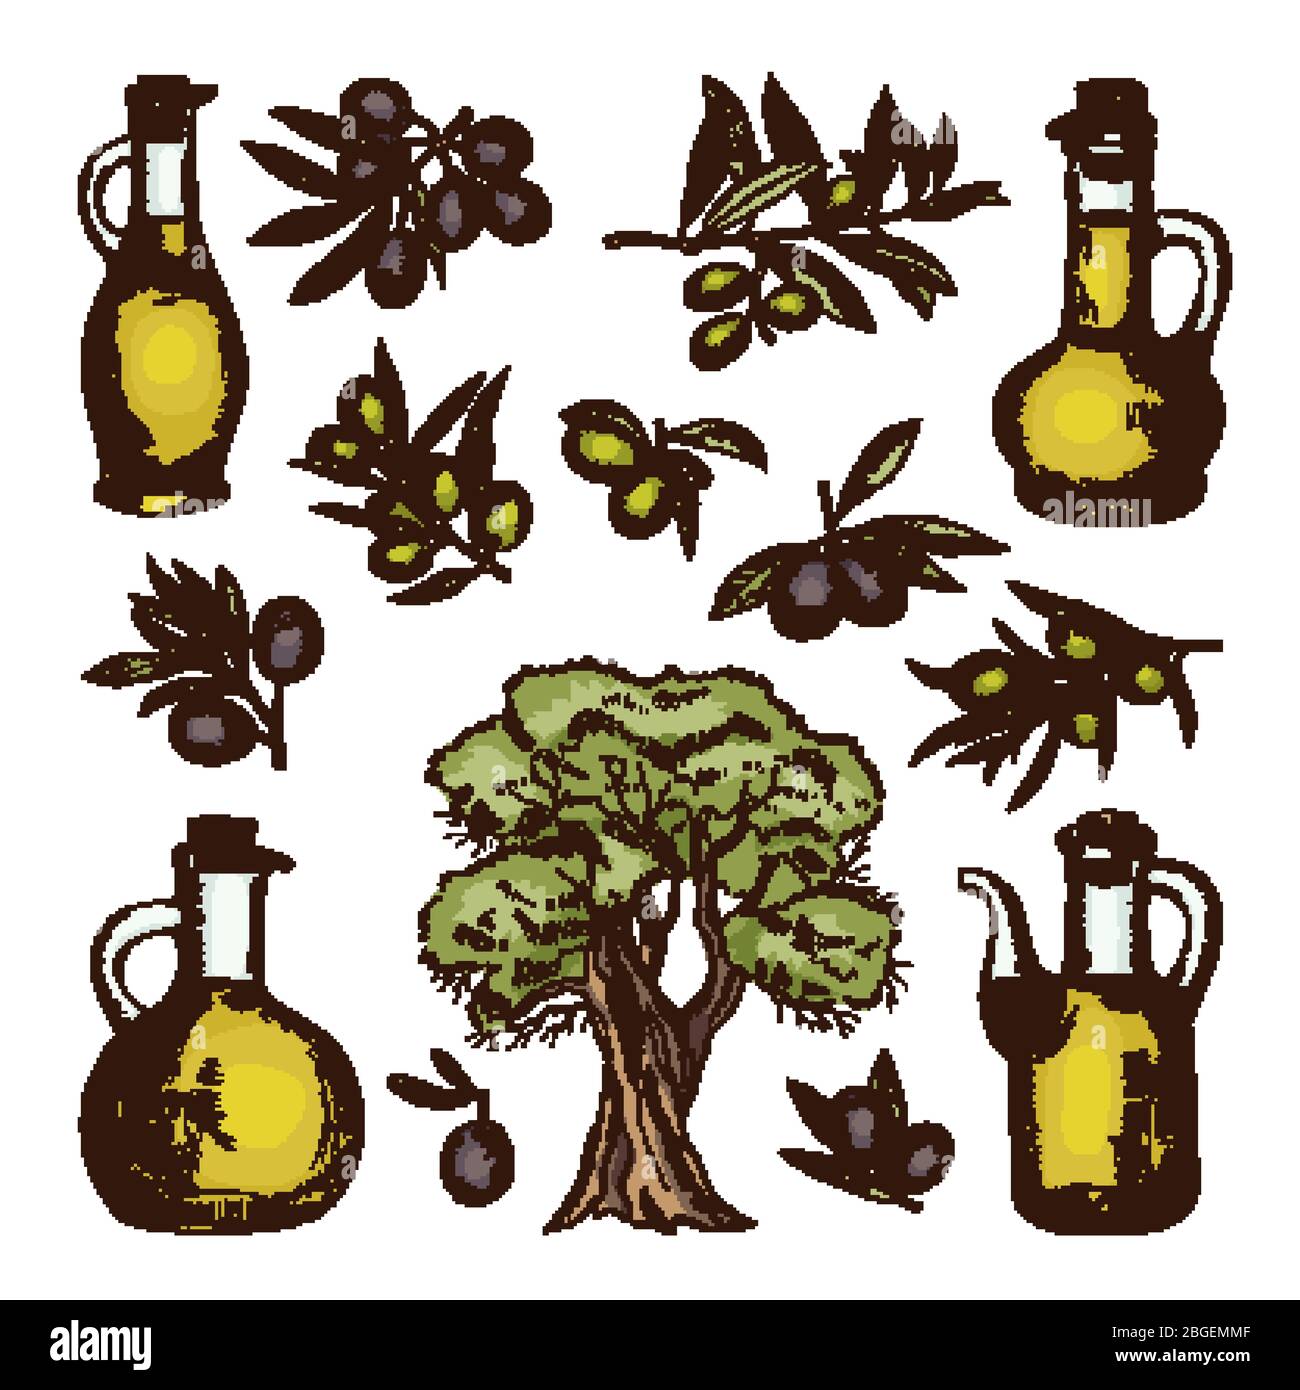 Farbige Illustrationen verschiedener Olivenprodukte und Zutaten. Vektor handgezeichnete Bilder isoliert Stock Vektor